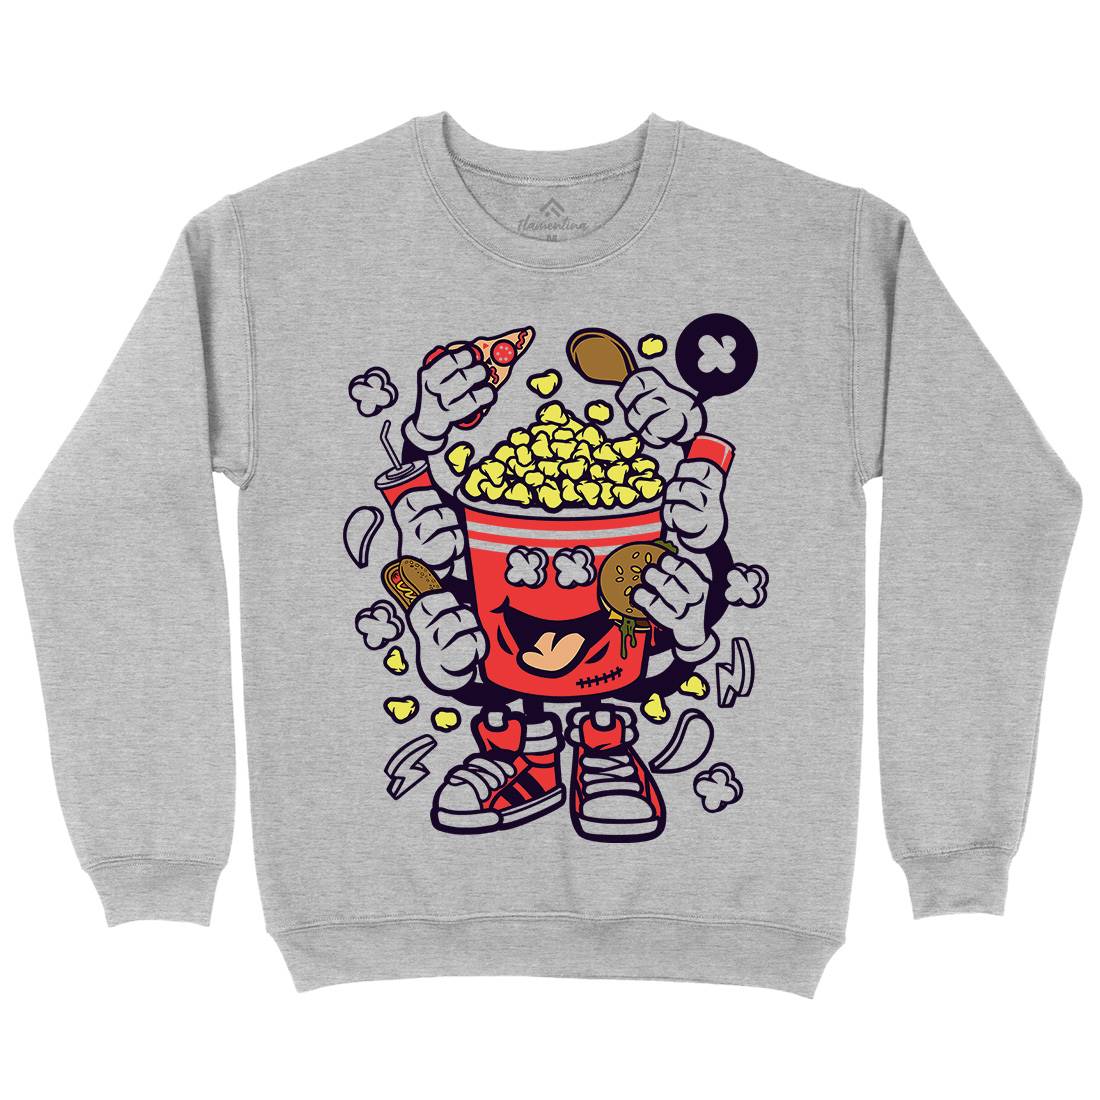 Popcorn Monster Kids Crew Neck Sweatshirt Food C197